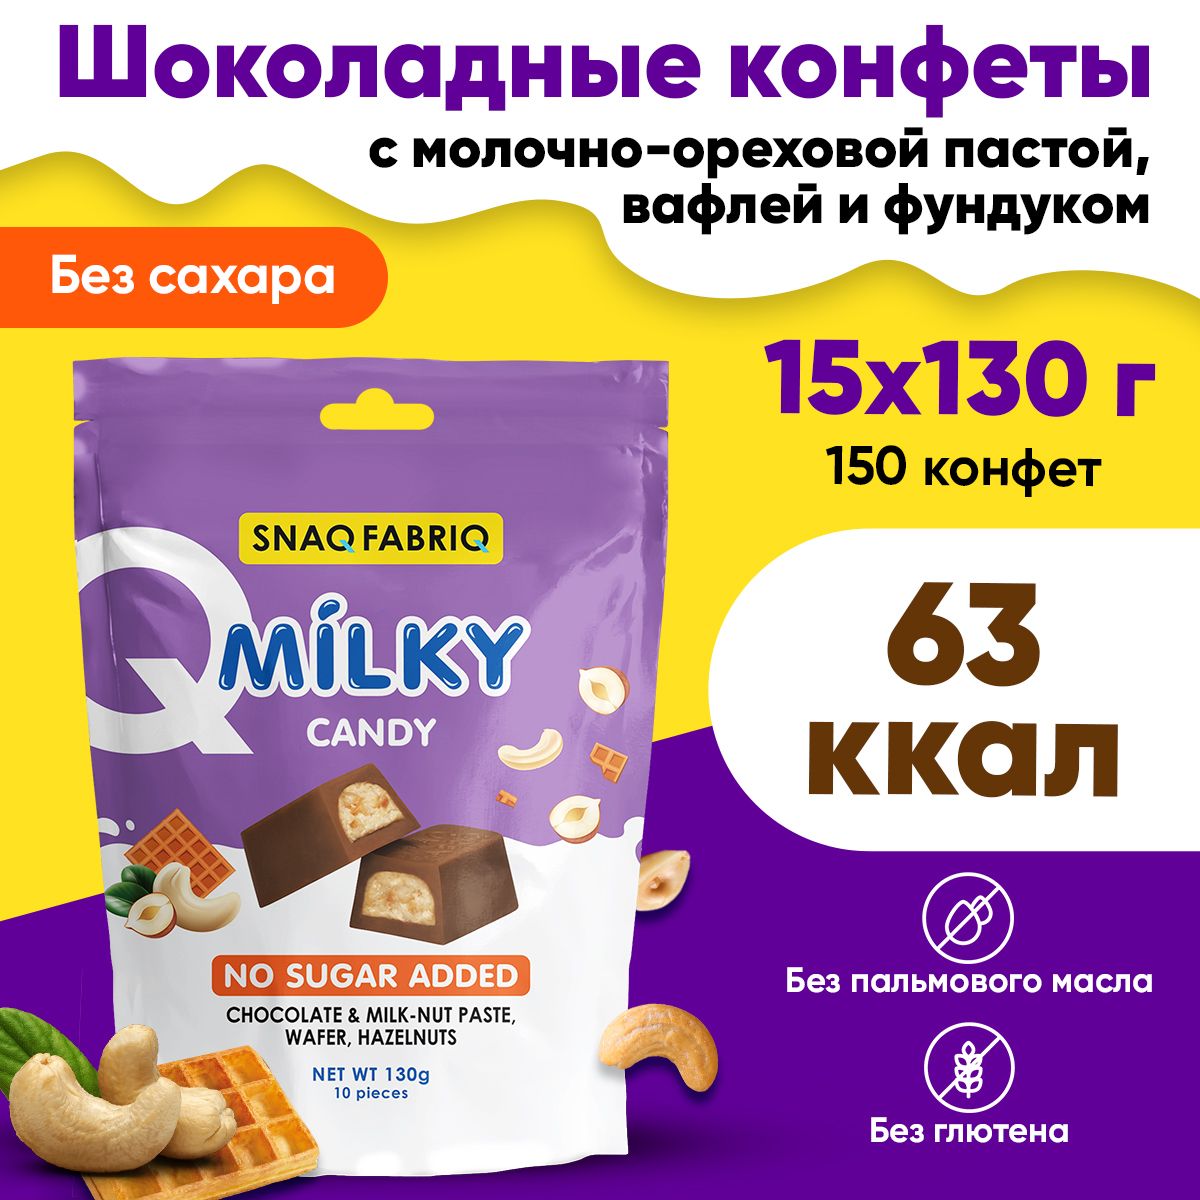 Конфеты шоколадные Snaq Fabriq Milky Candy, 15 шт по 130 г